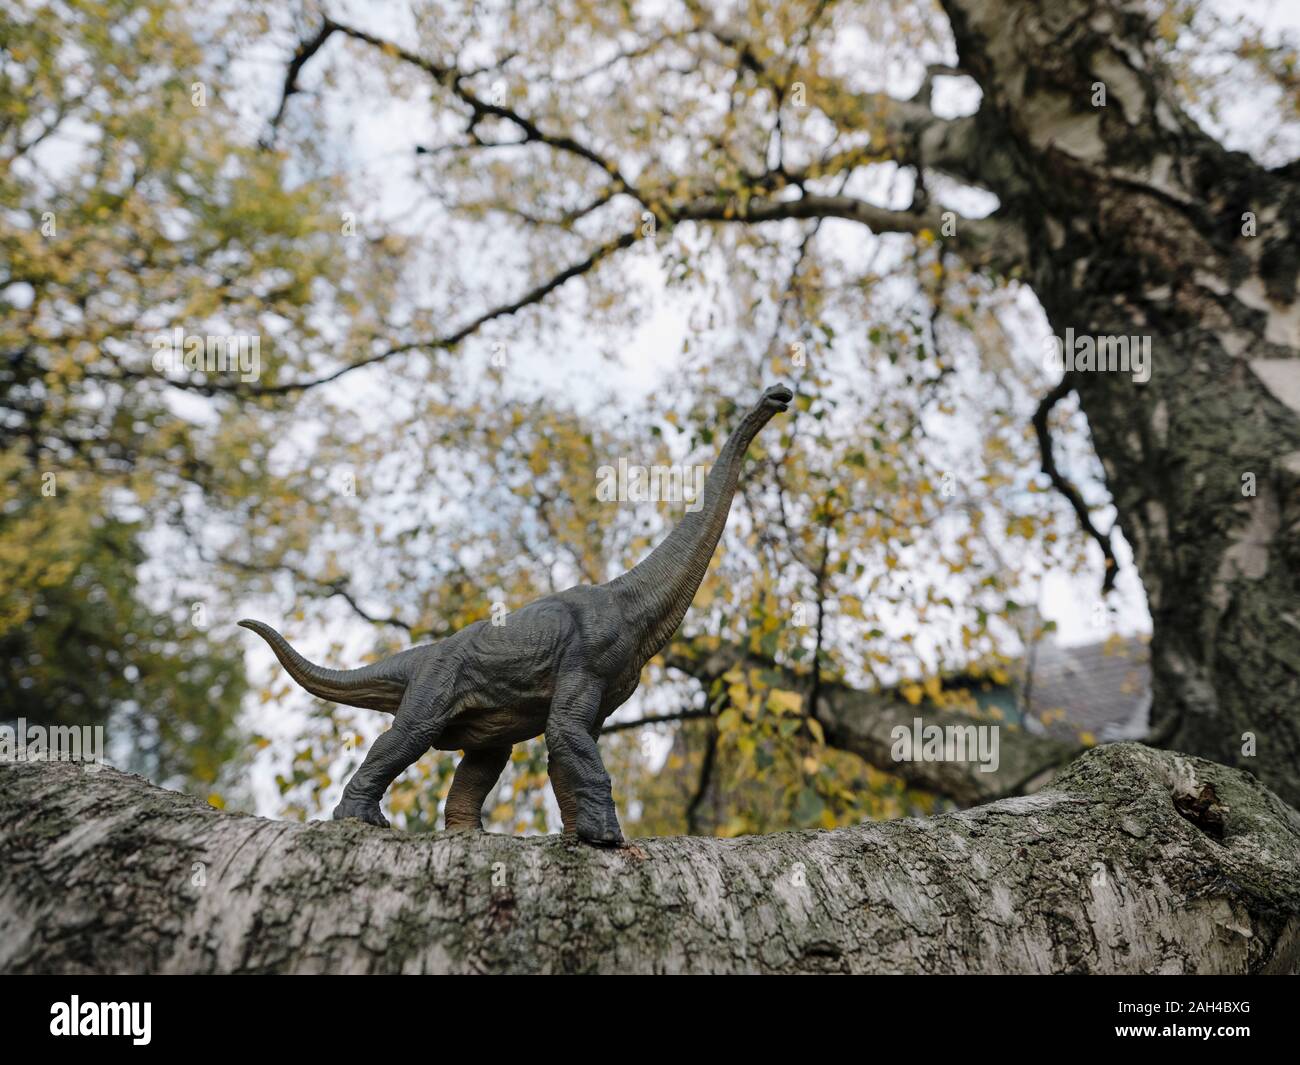 Figurilla de dinosaurios en un árbol en otoño Foto de stock